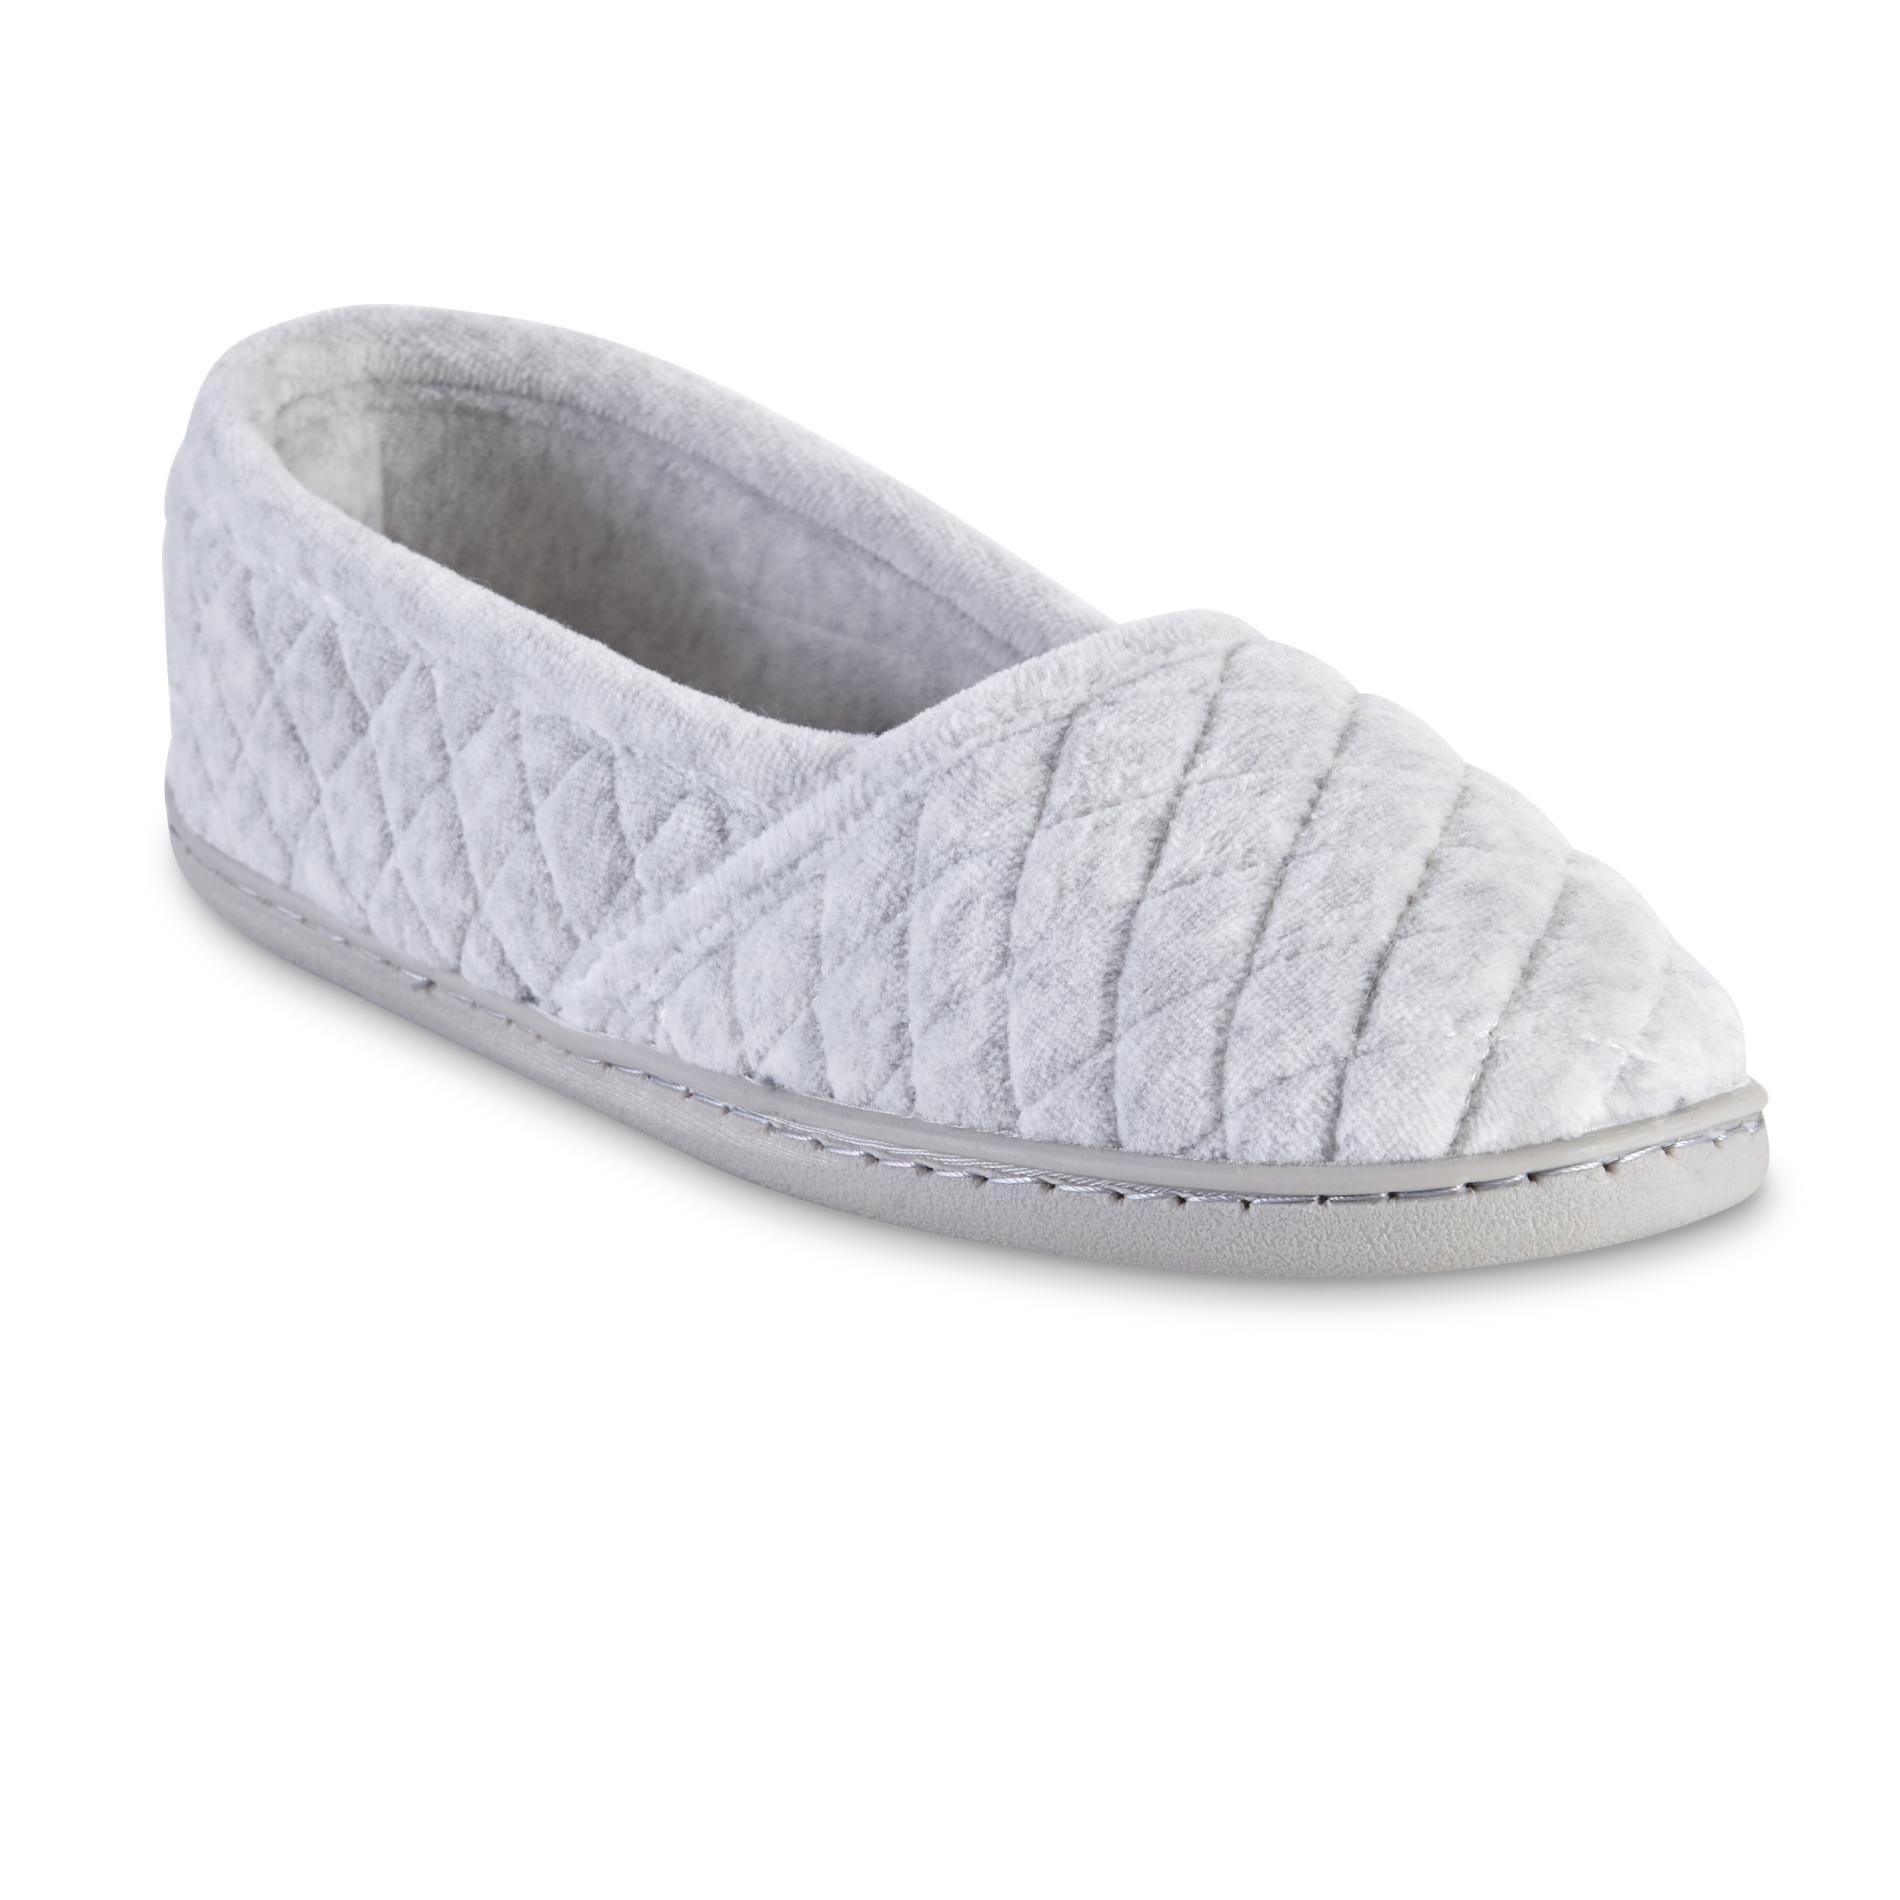 winter slippers kmart